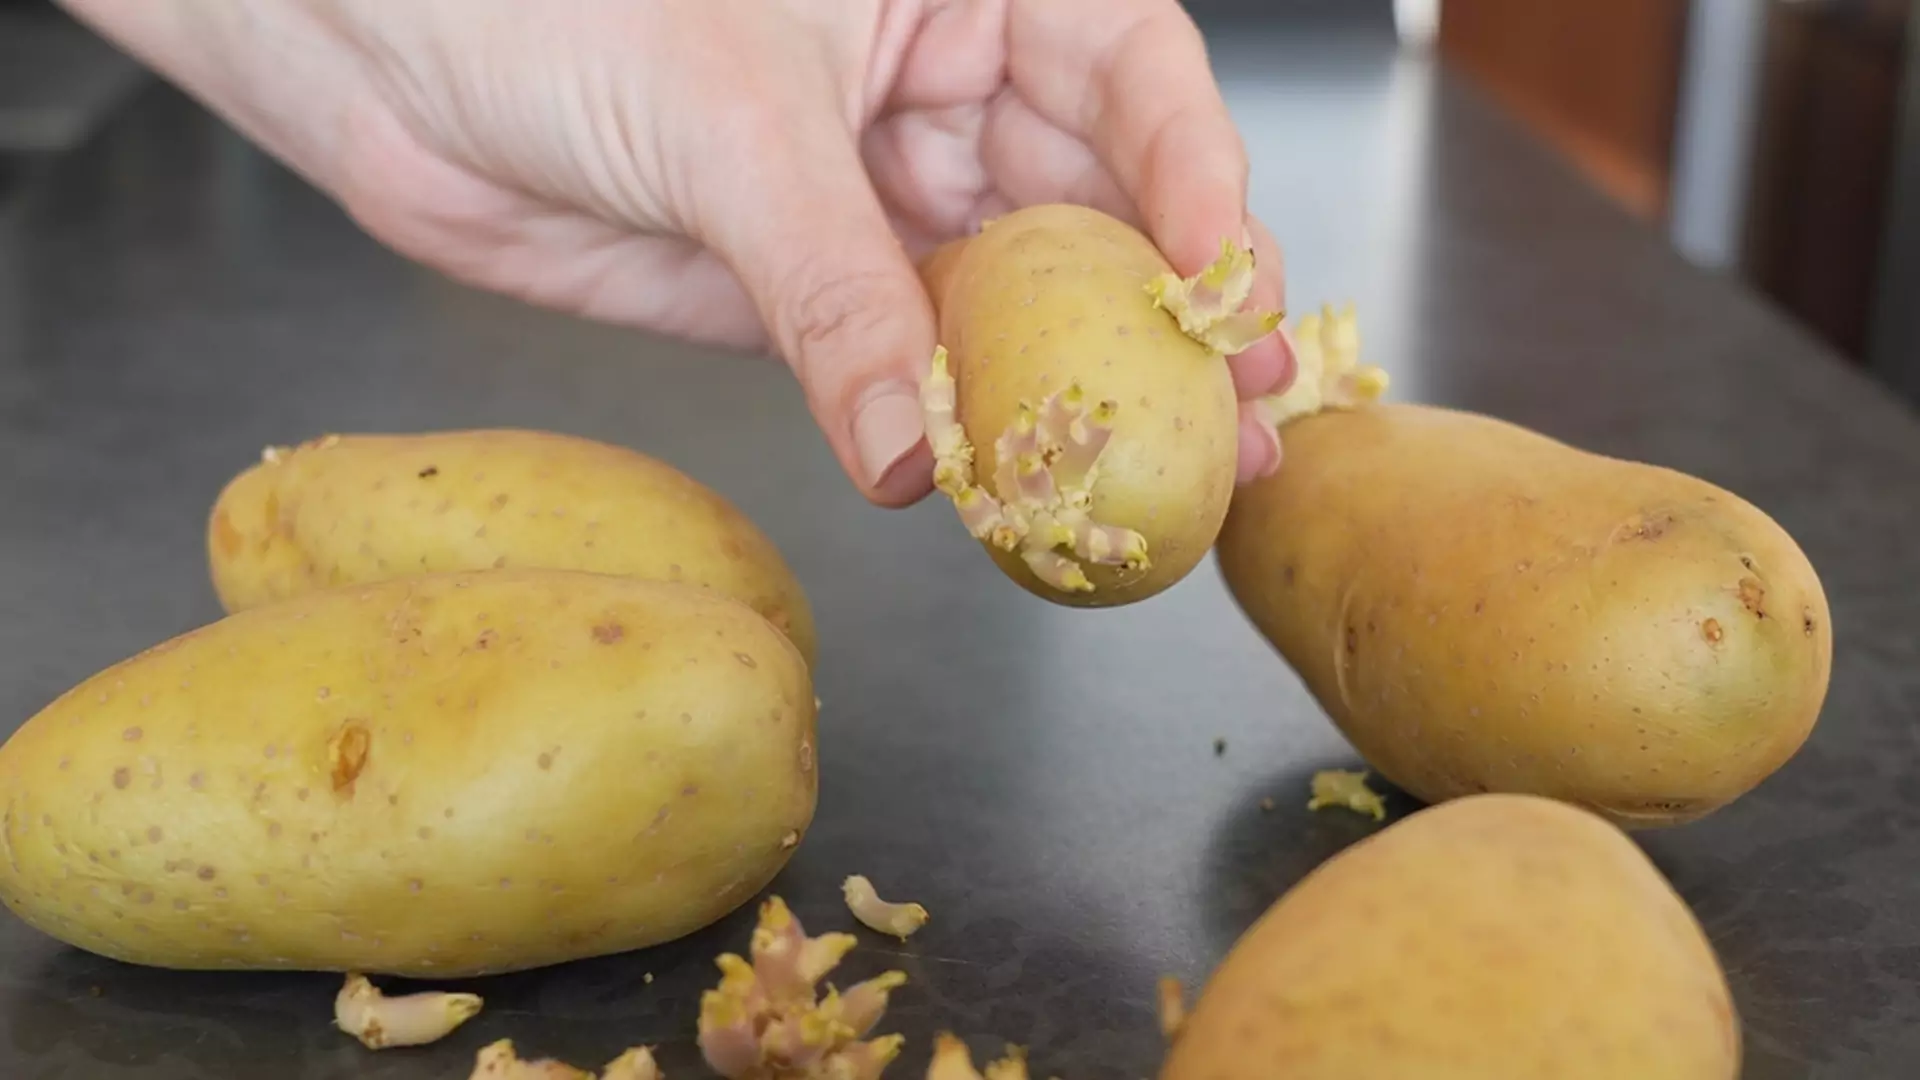 Czy ziemniaki z kiełkami są bezpieczne do spożycia? Wyjaśniamy